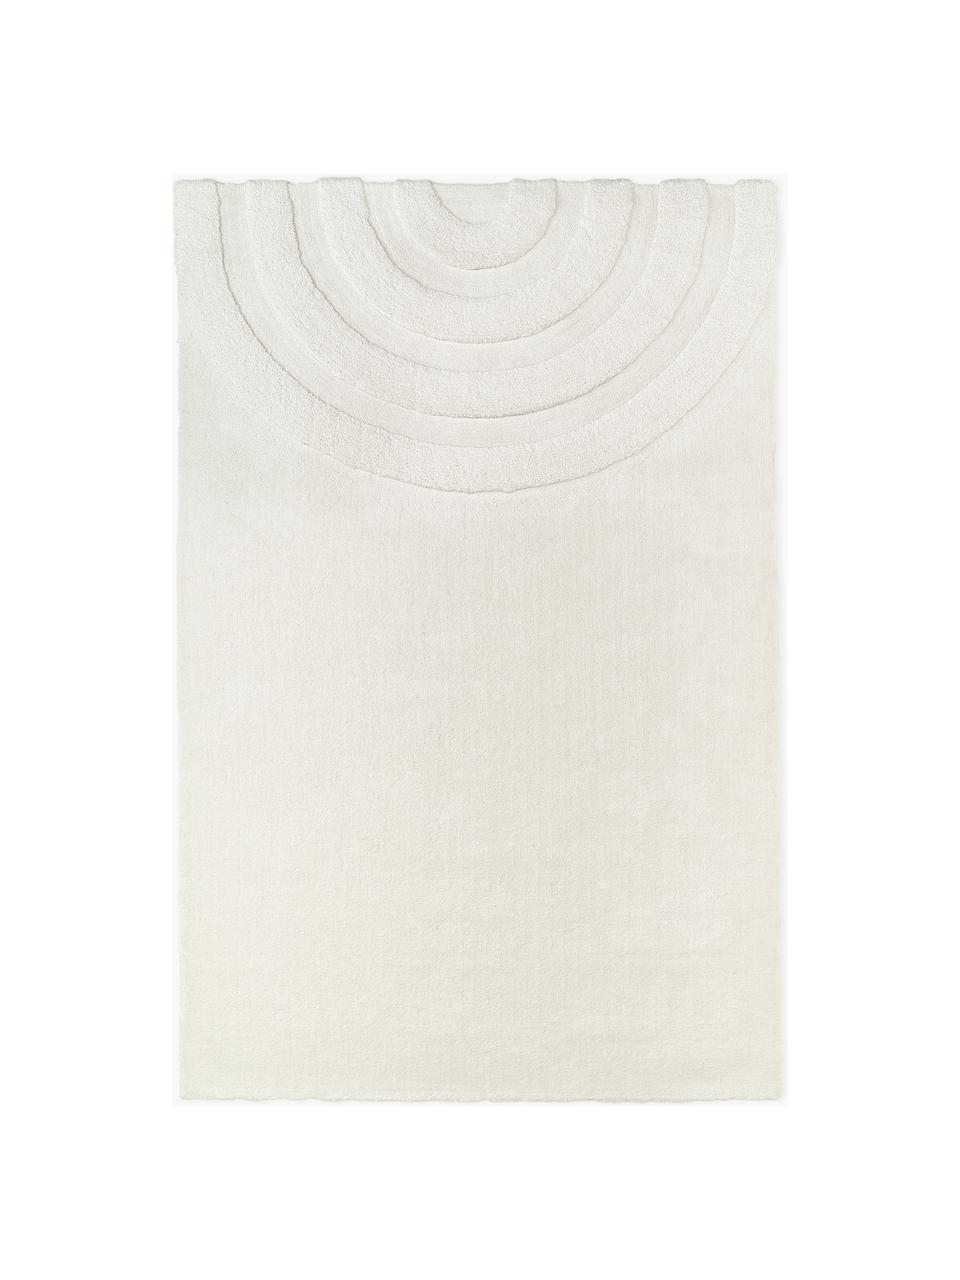 Tapis moelleux à poils longs texturé Rubbie, Blanc crème, larg. 120 x long. 180 cm (taille S)